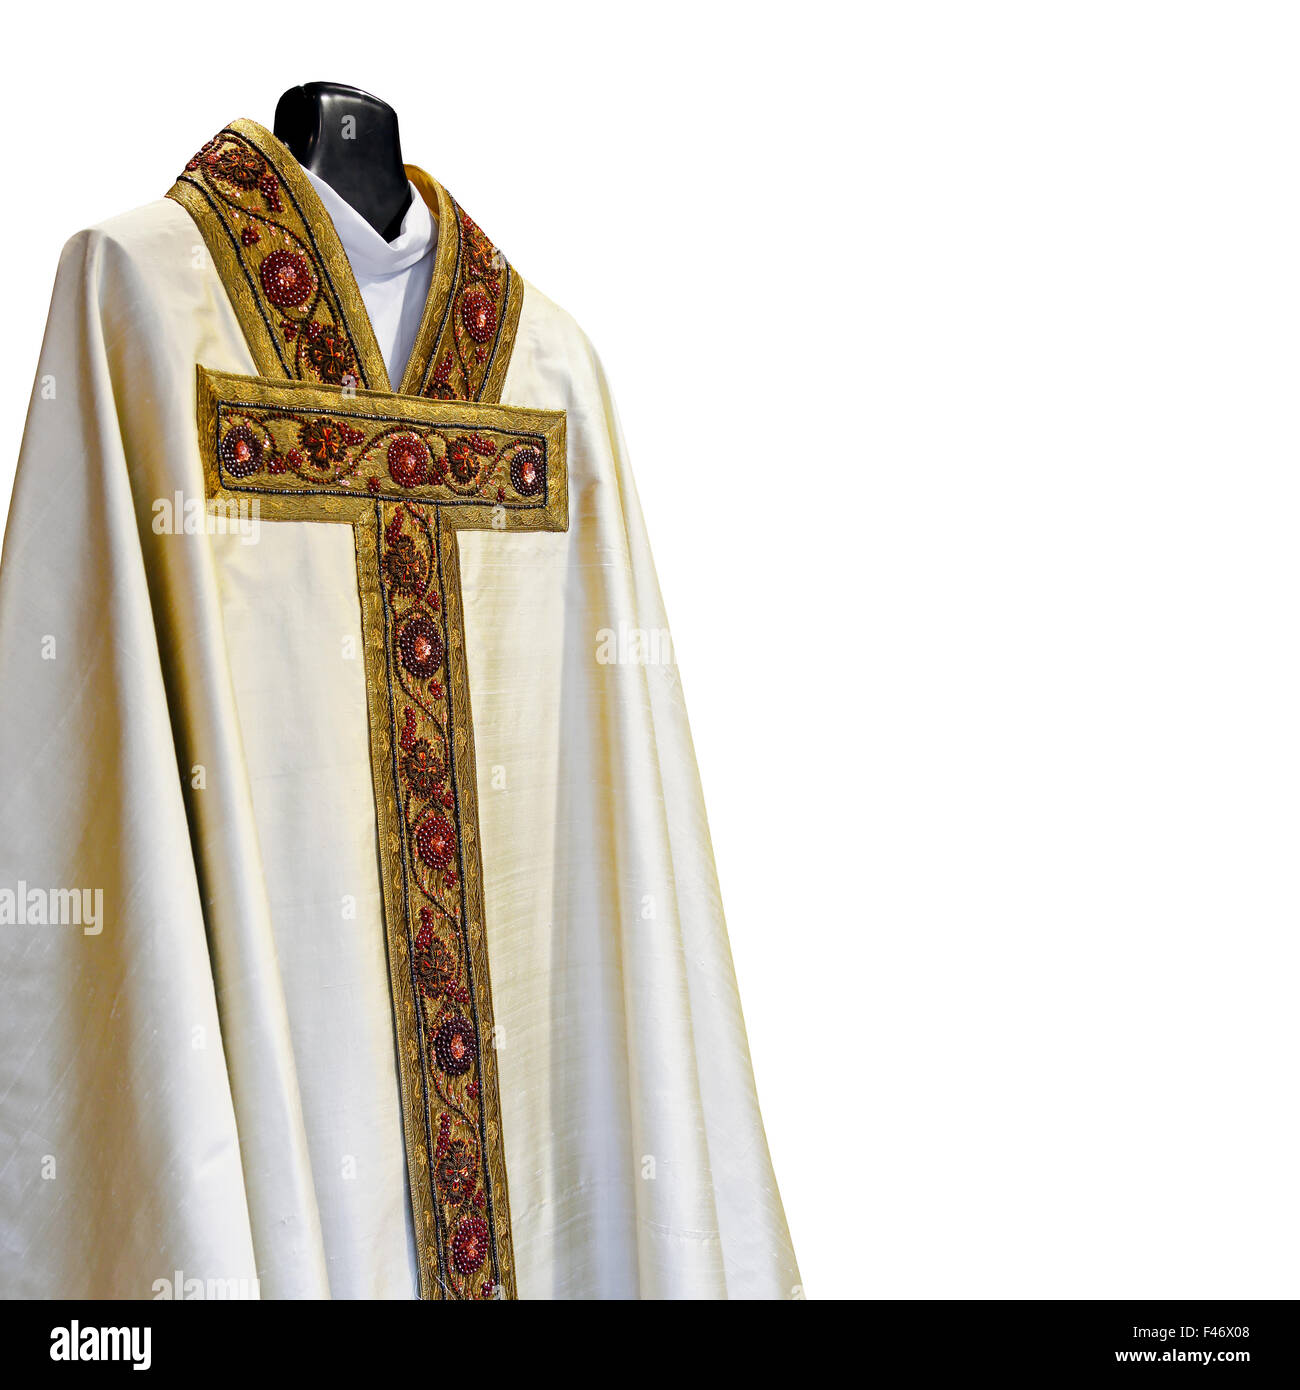 Priest dress immagini e fotografie stock ad alta risoluzione - Alamy